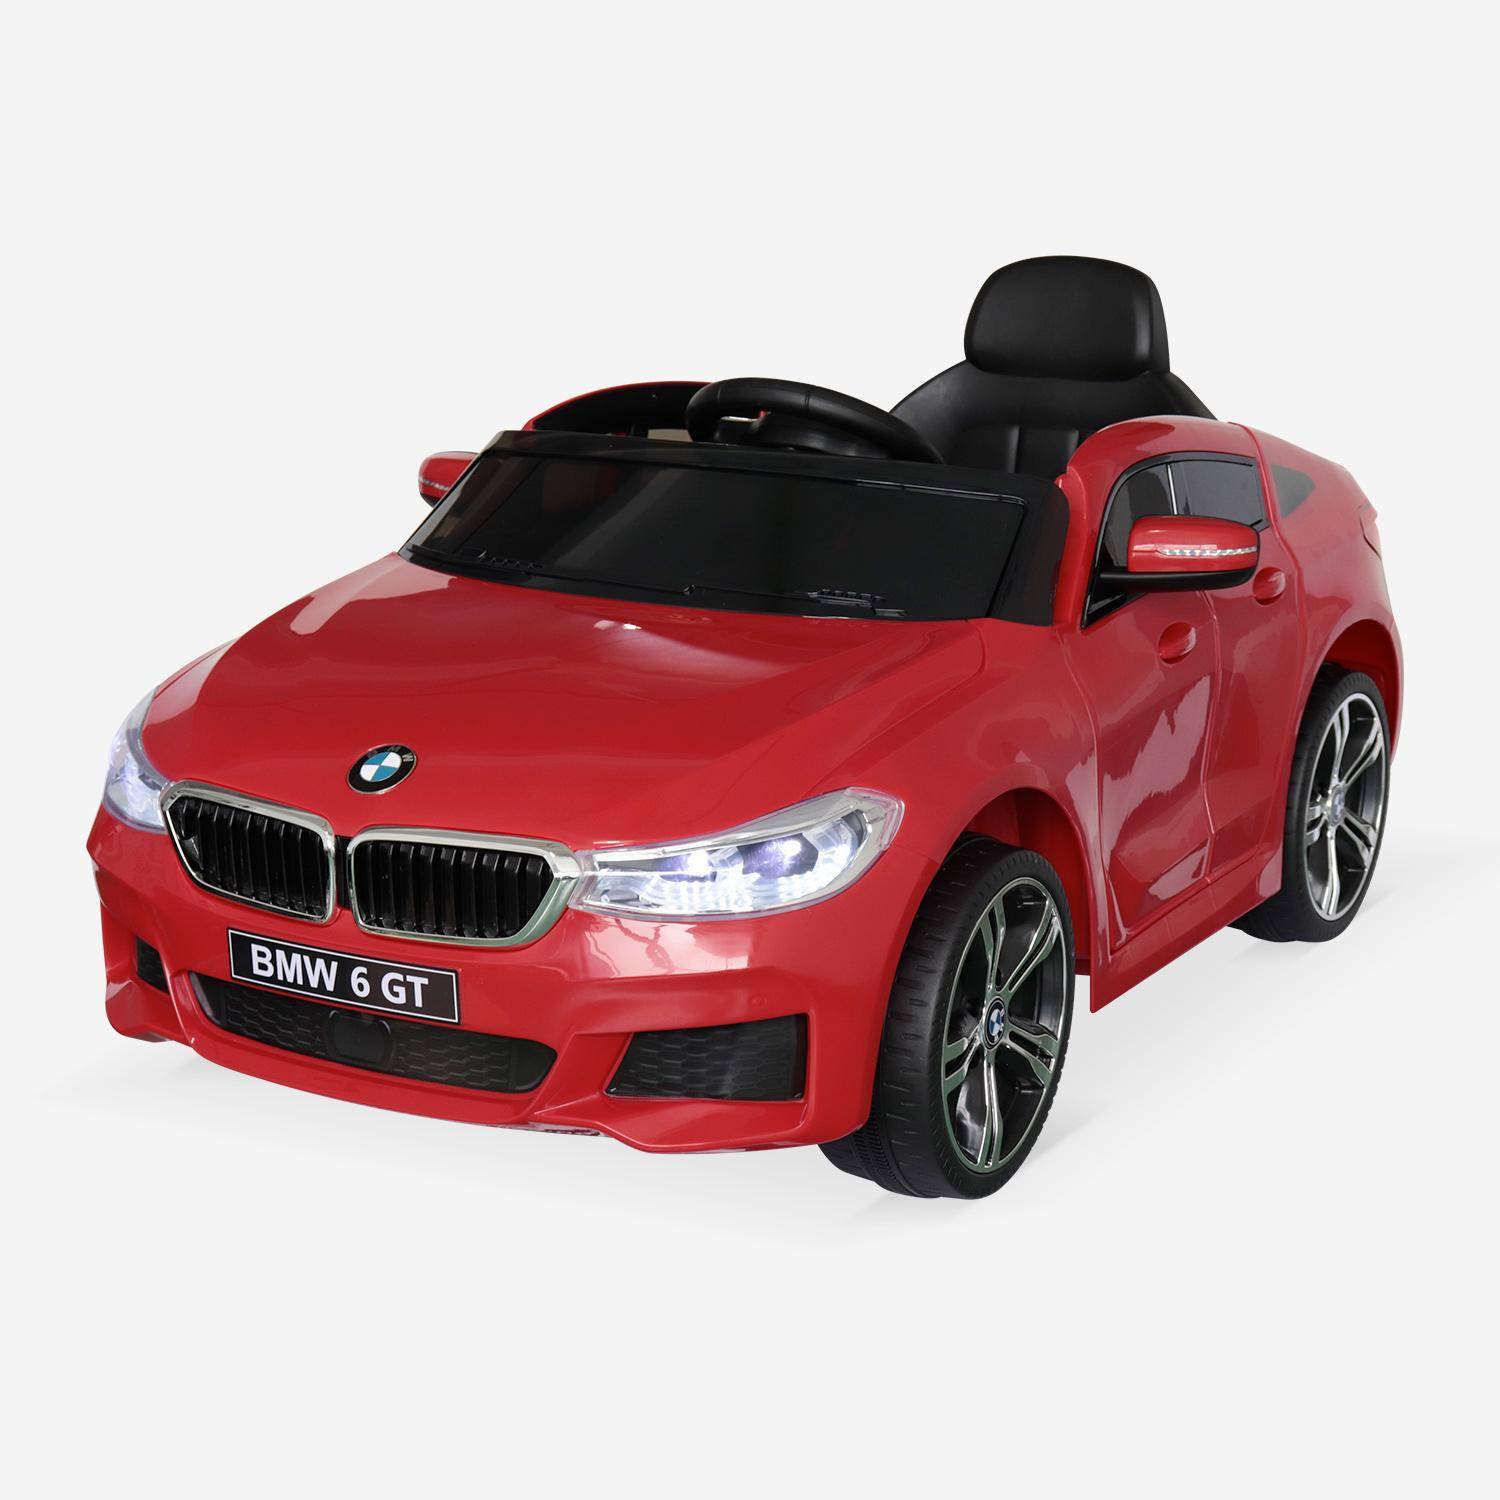 BMW Serie 6GT Gran Turismo rossa, macchina elettrica per bambini 12V 4 Ah, 1 posto, con autoradio e telecomando Photo2